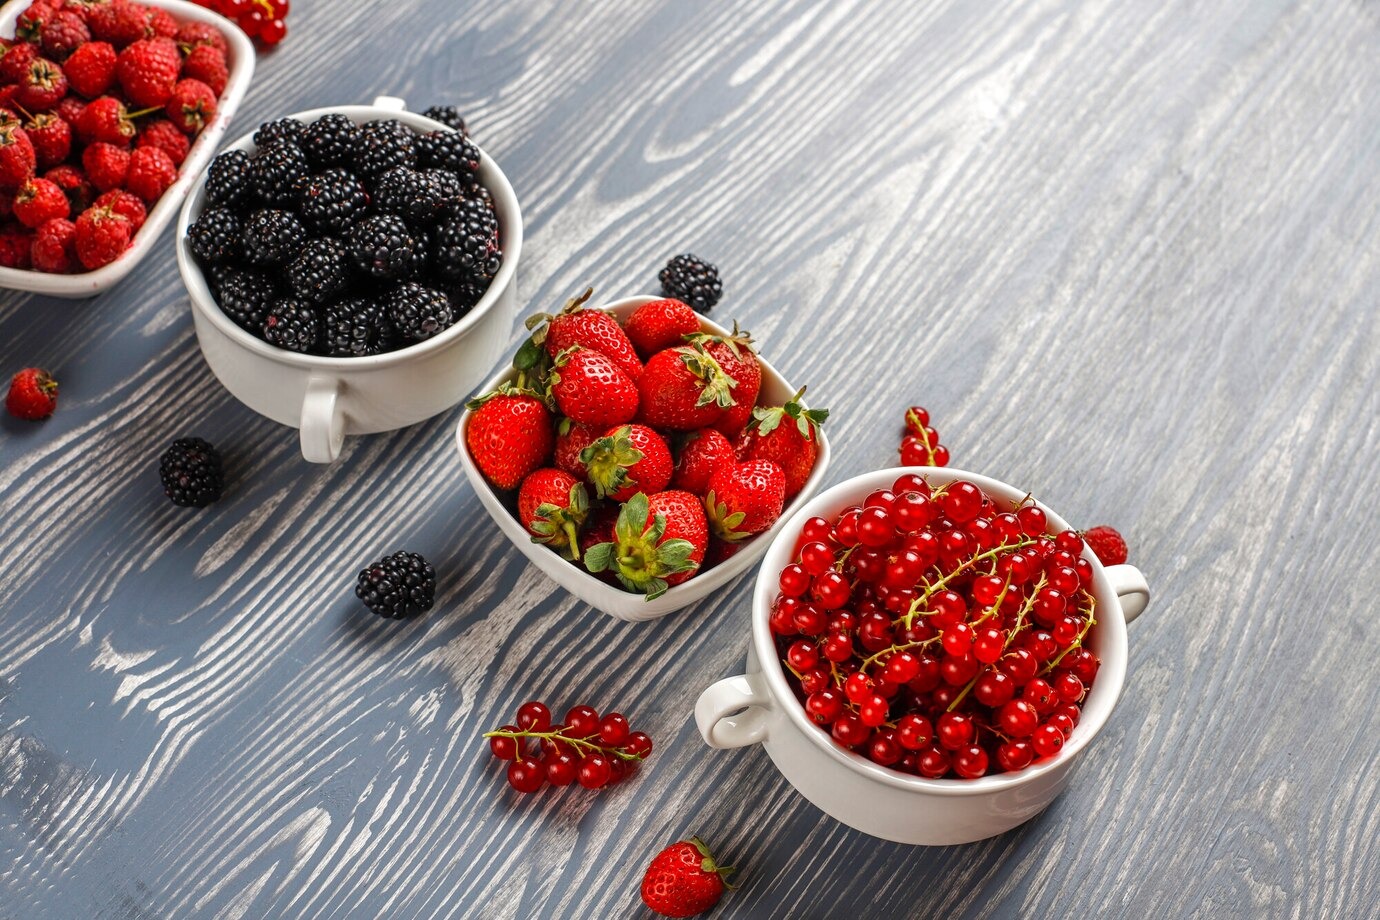 Nutrients: Две чашки ягод в день принесут максимальную пользу для сердца